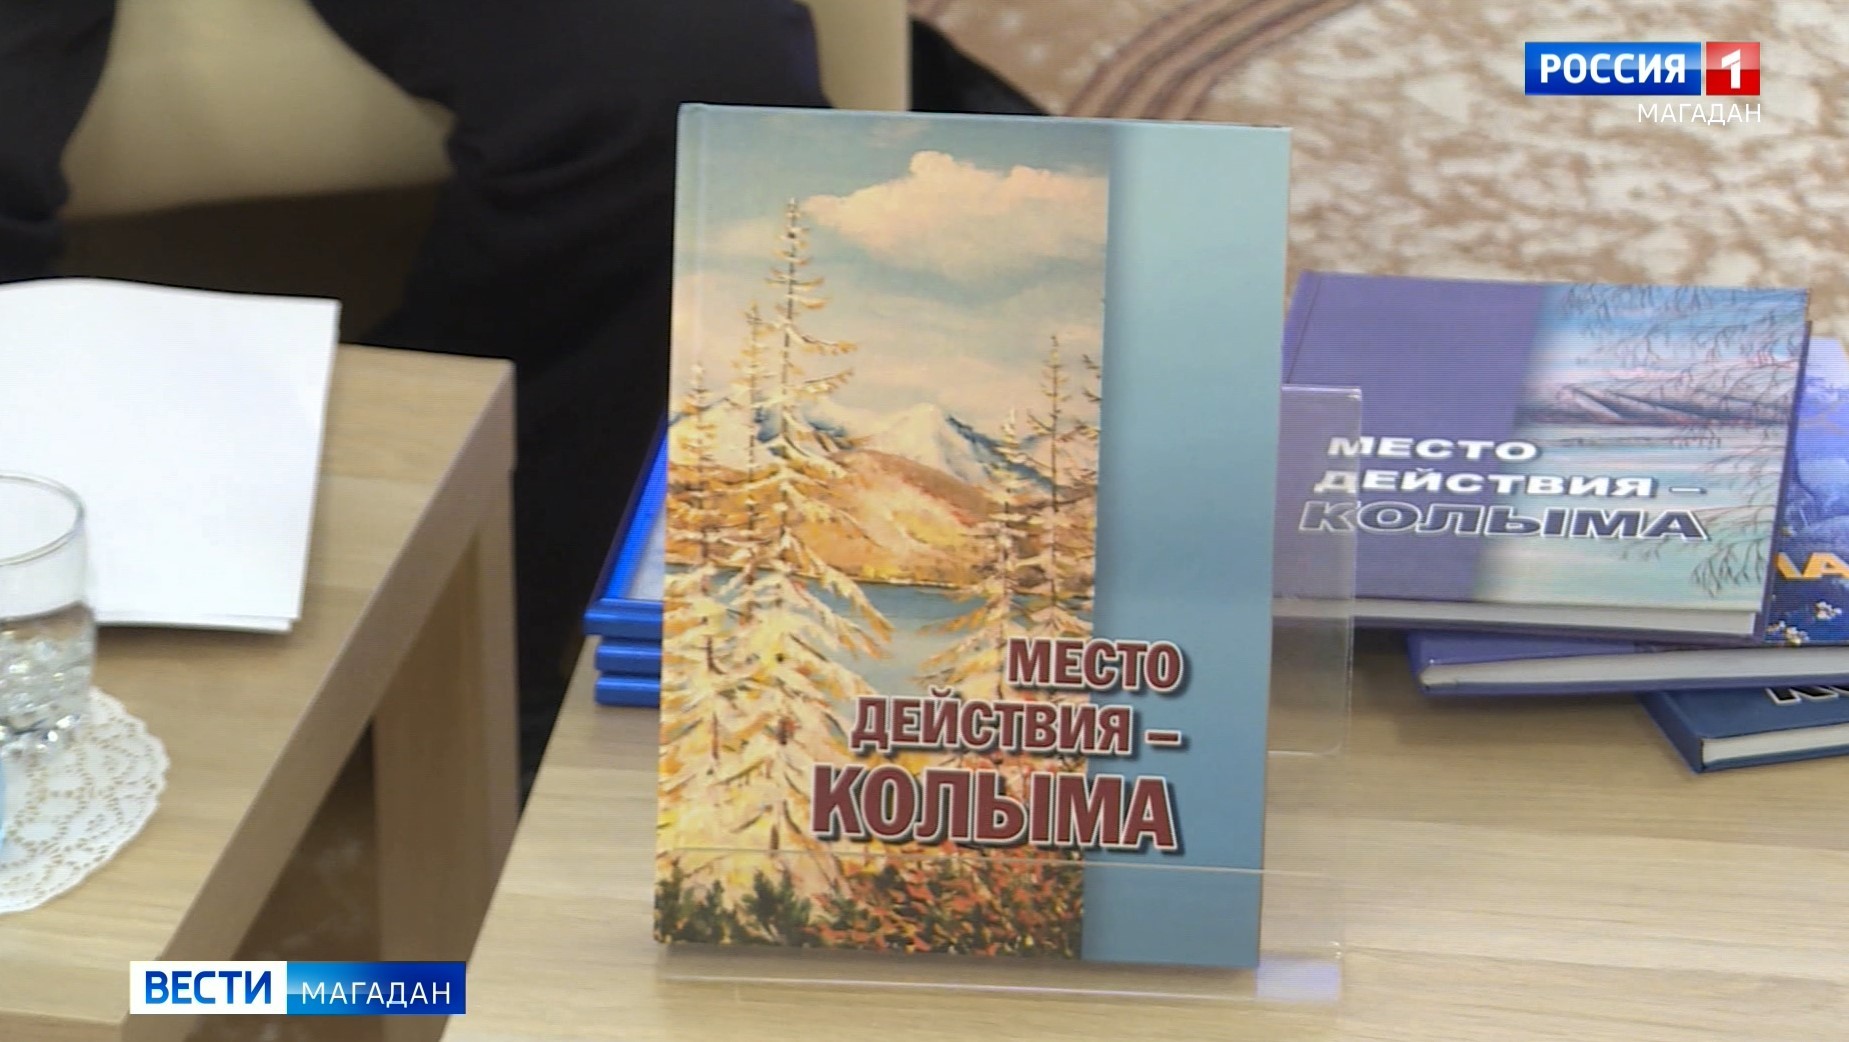 К 75-летию УФСБ по Магаданской области выпущен альманах